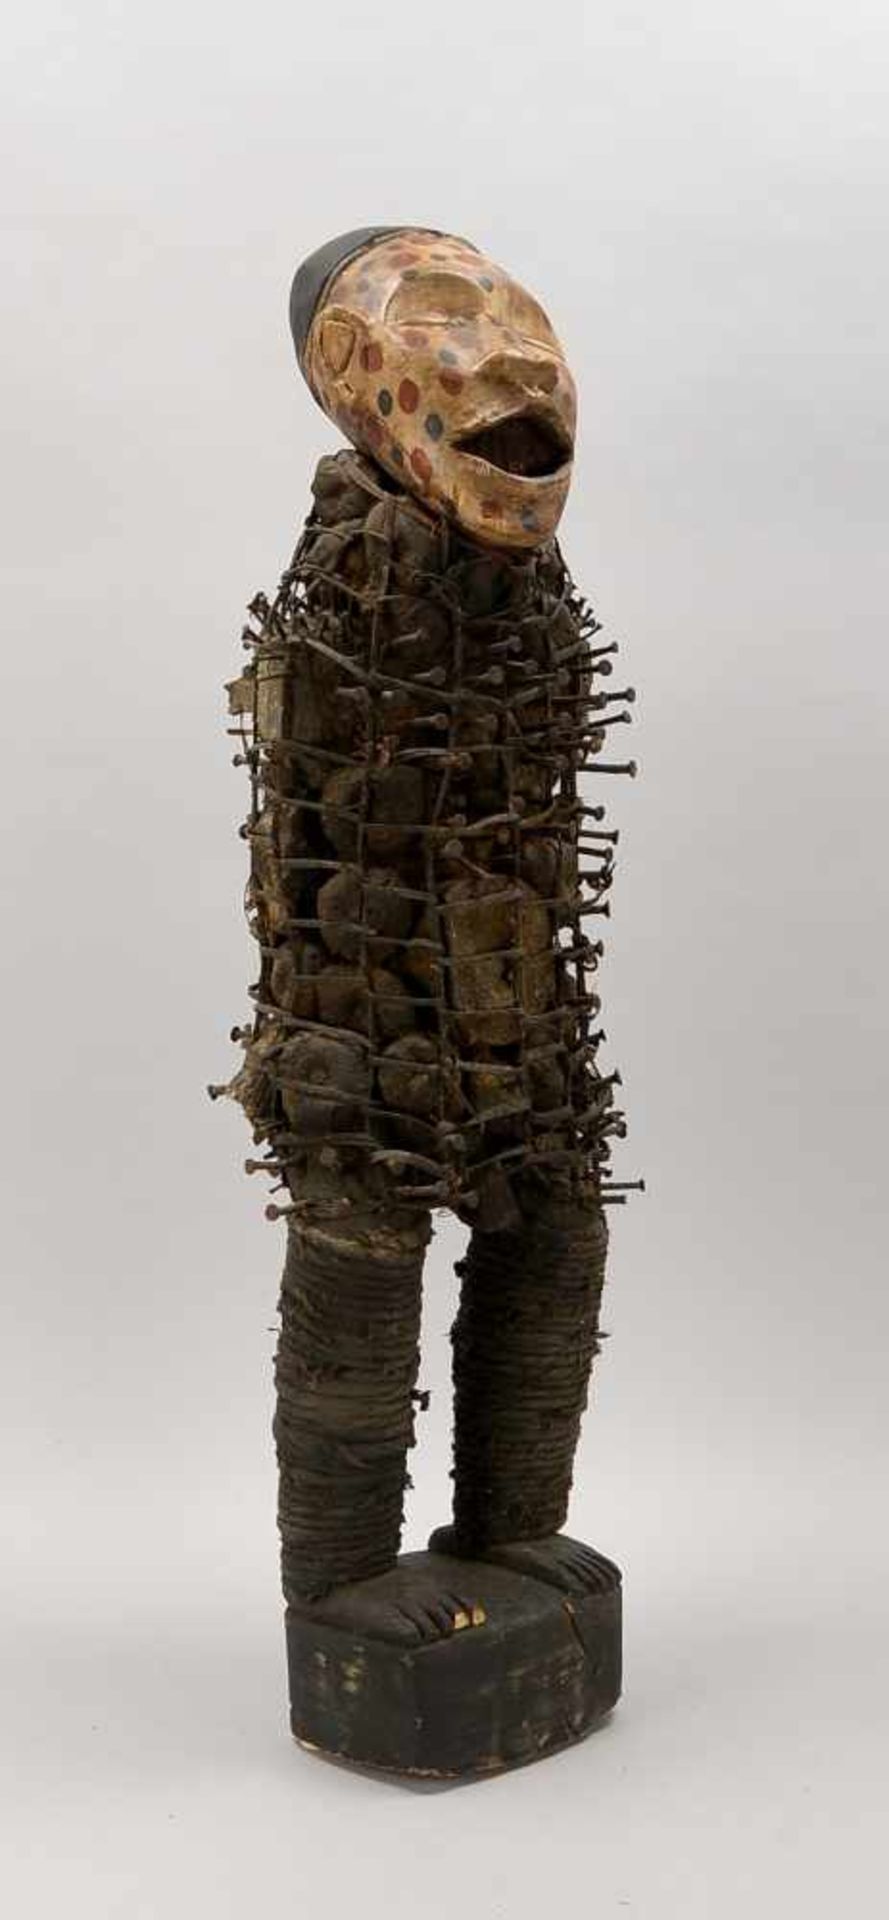 Nagelfetisch, 'Nkisi', Vili/Kongo, aus Metall/Holz und Gewebe; Maße ca. 100 cm x 34 cm